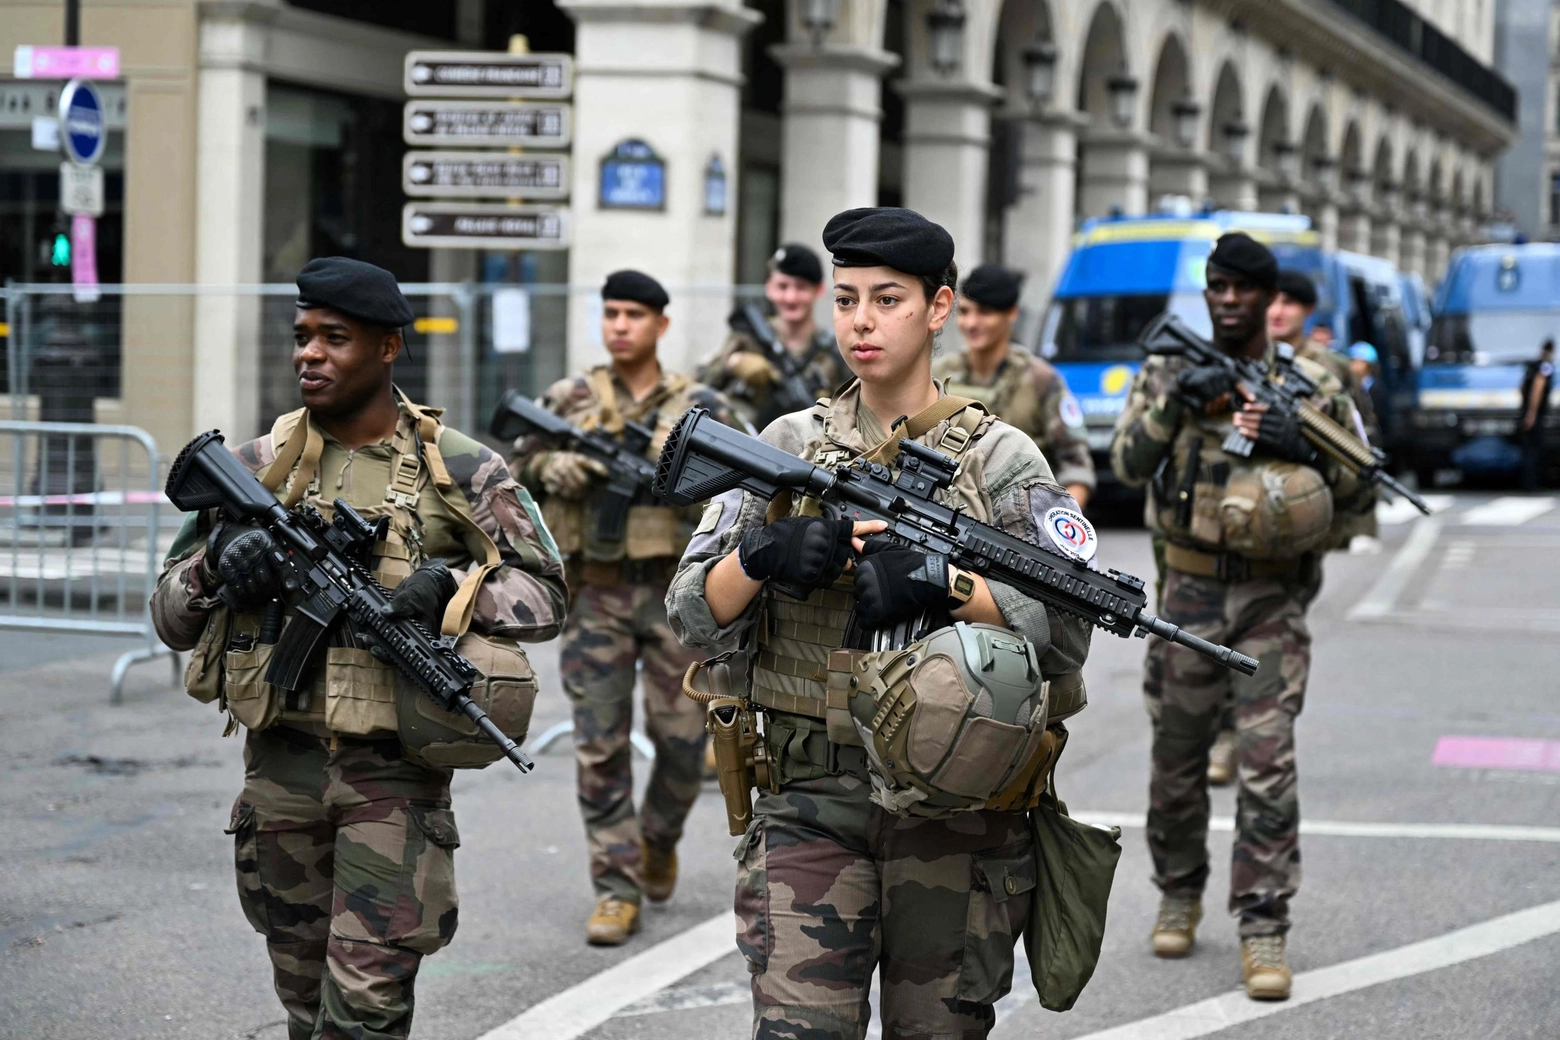 Misure di sicurezza imponenti a Parigi